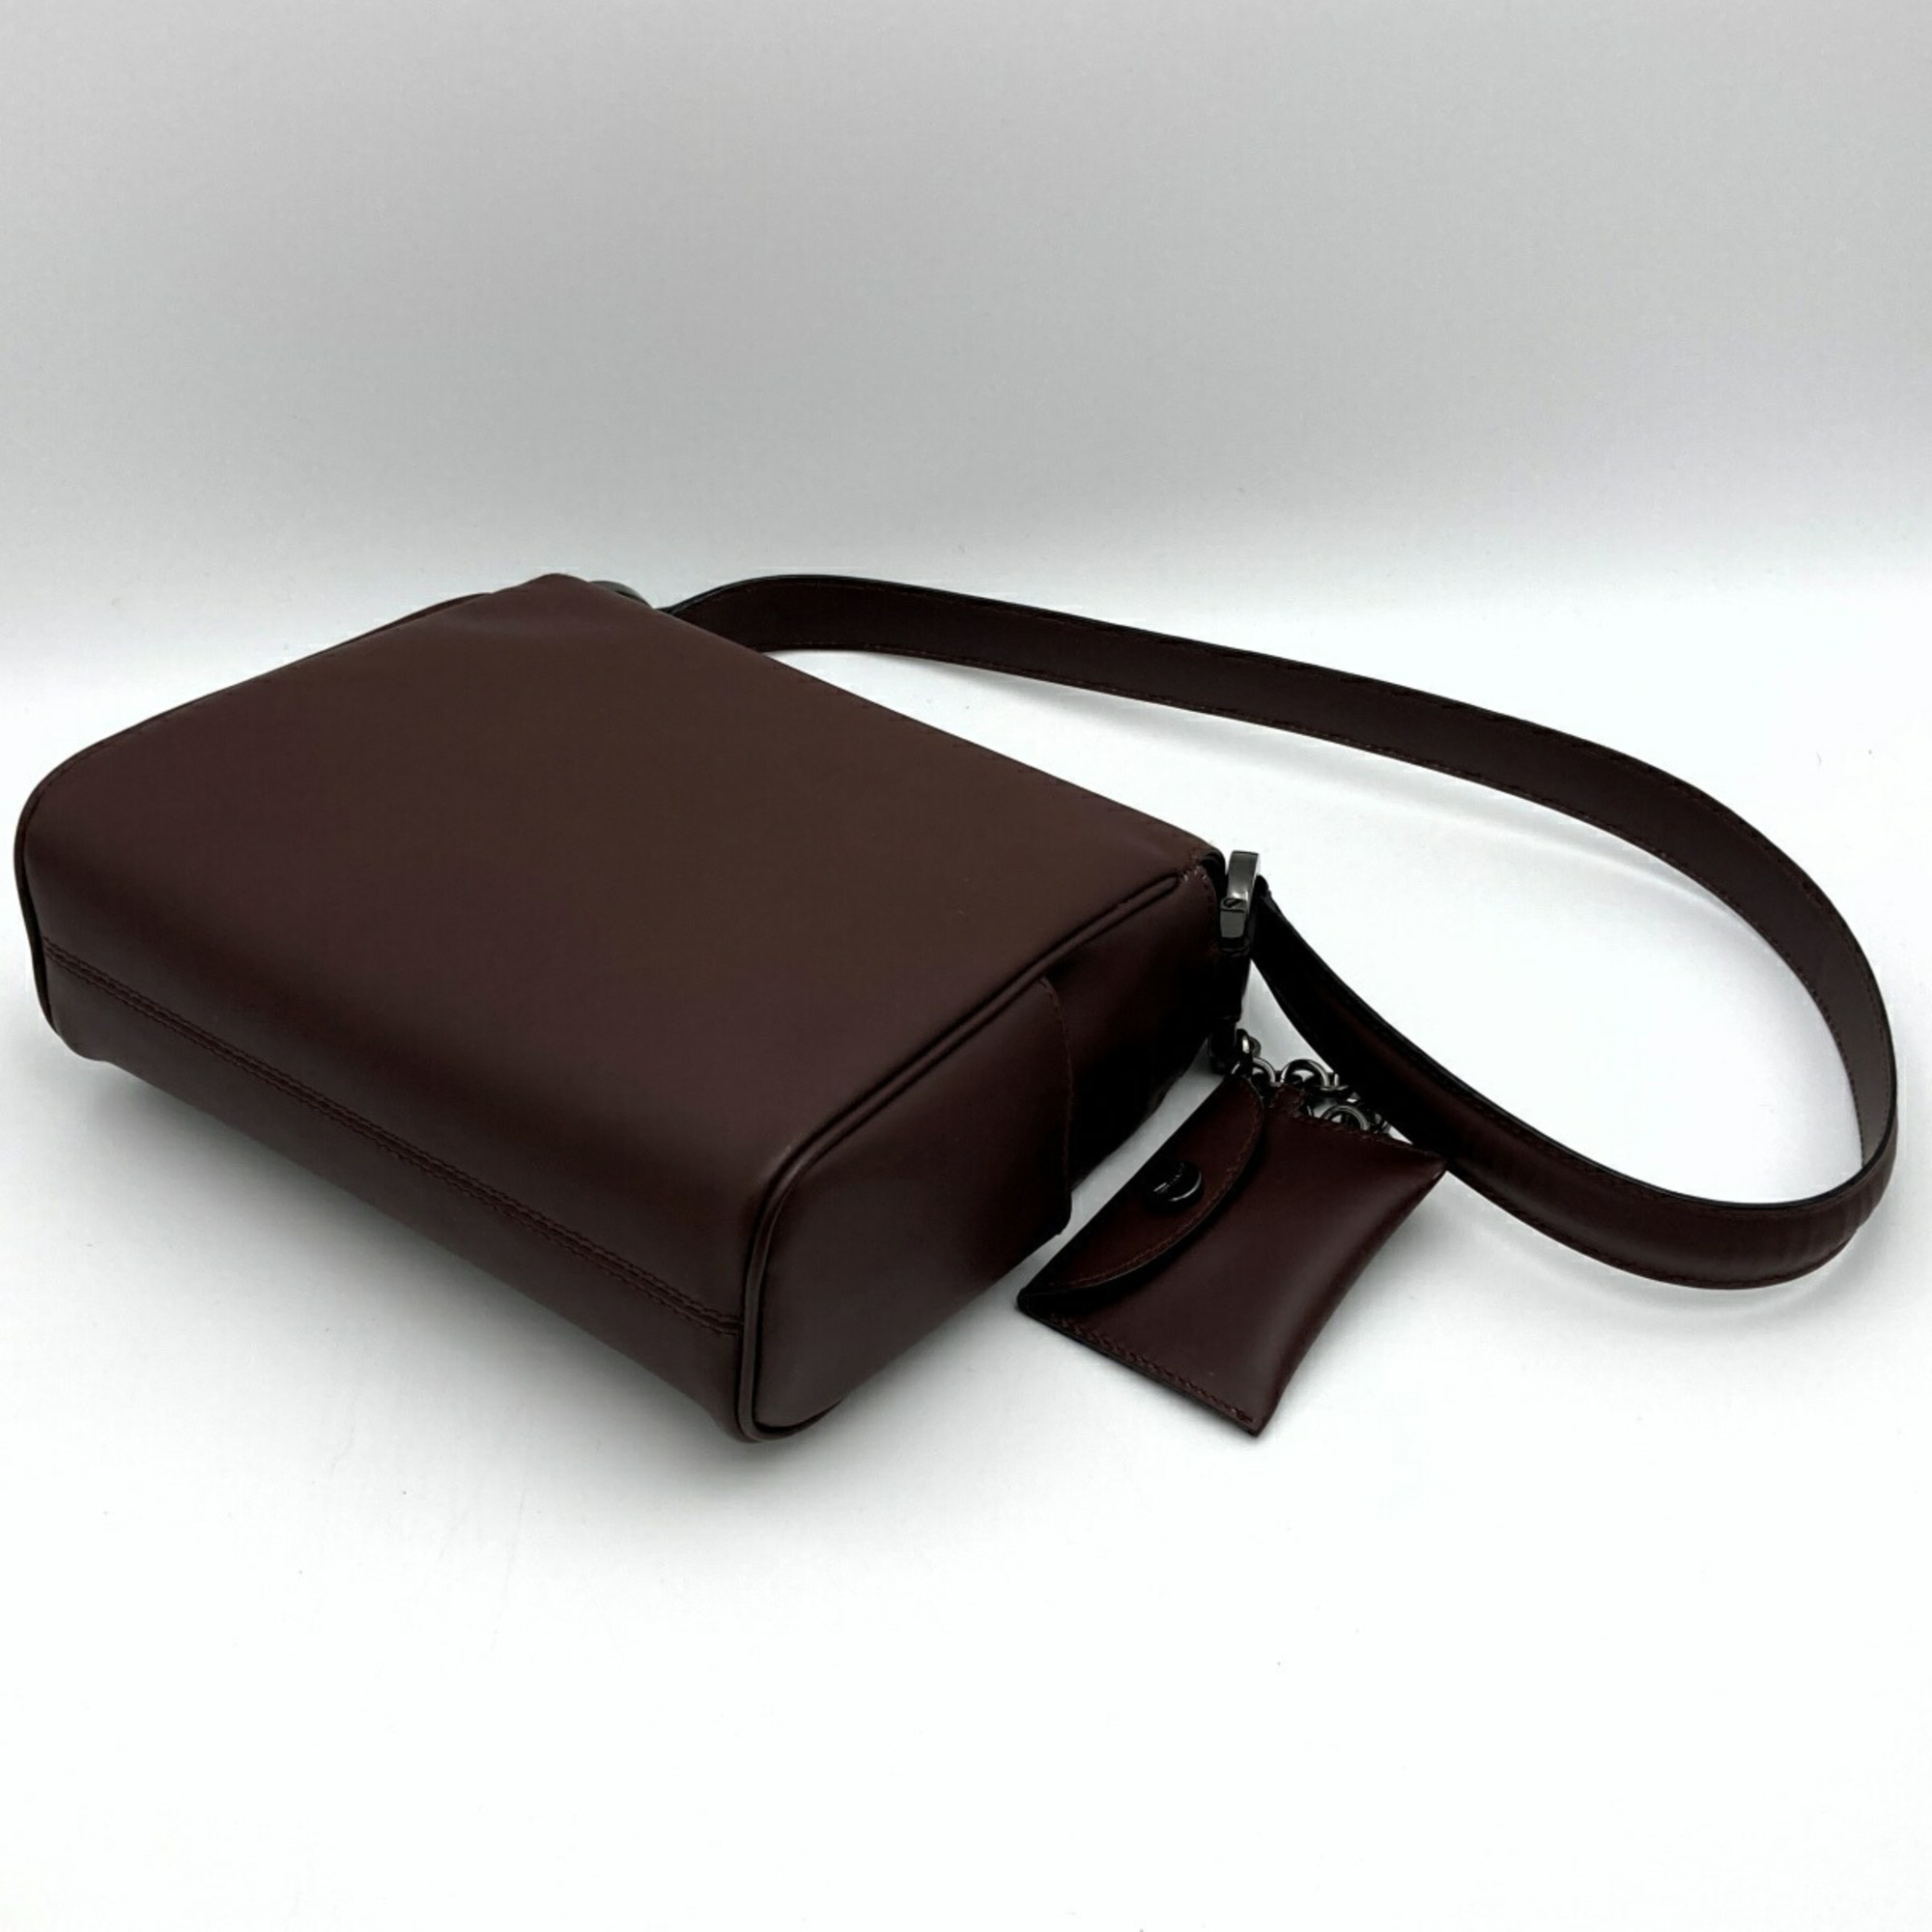 Salvatore Ferragamo Shoulder Bag with Mini Pouch Bordeaux Leather Women's Fashion